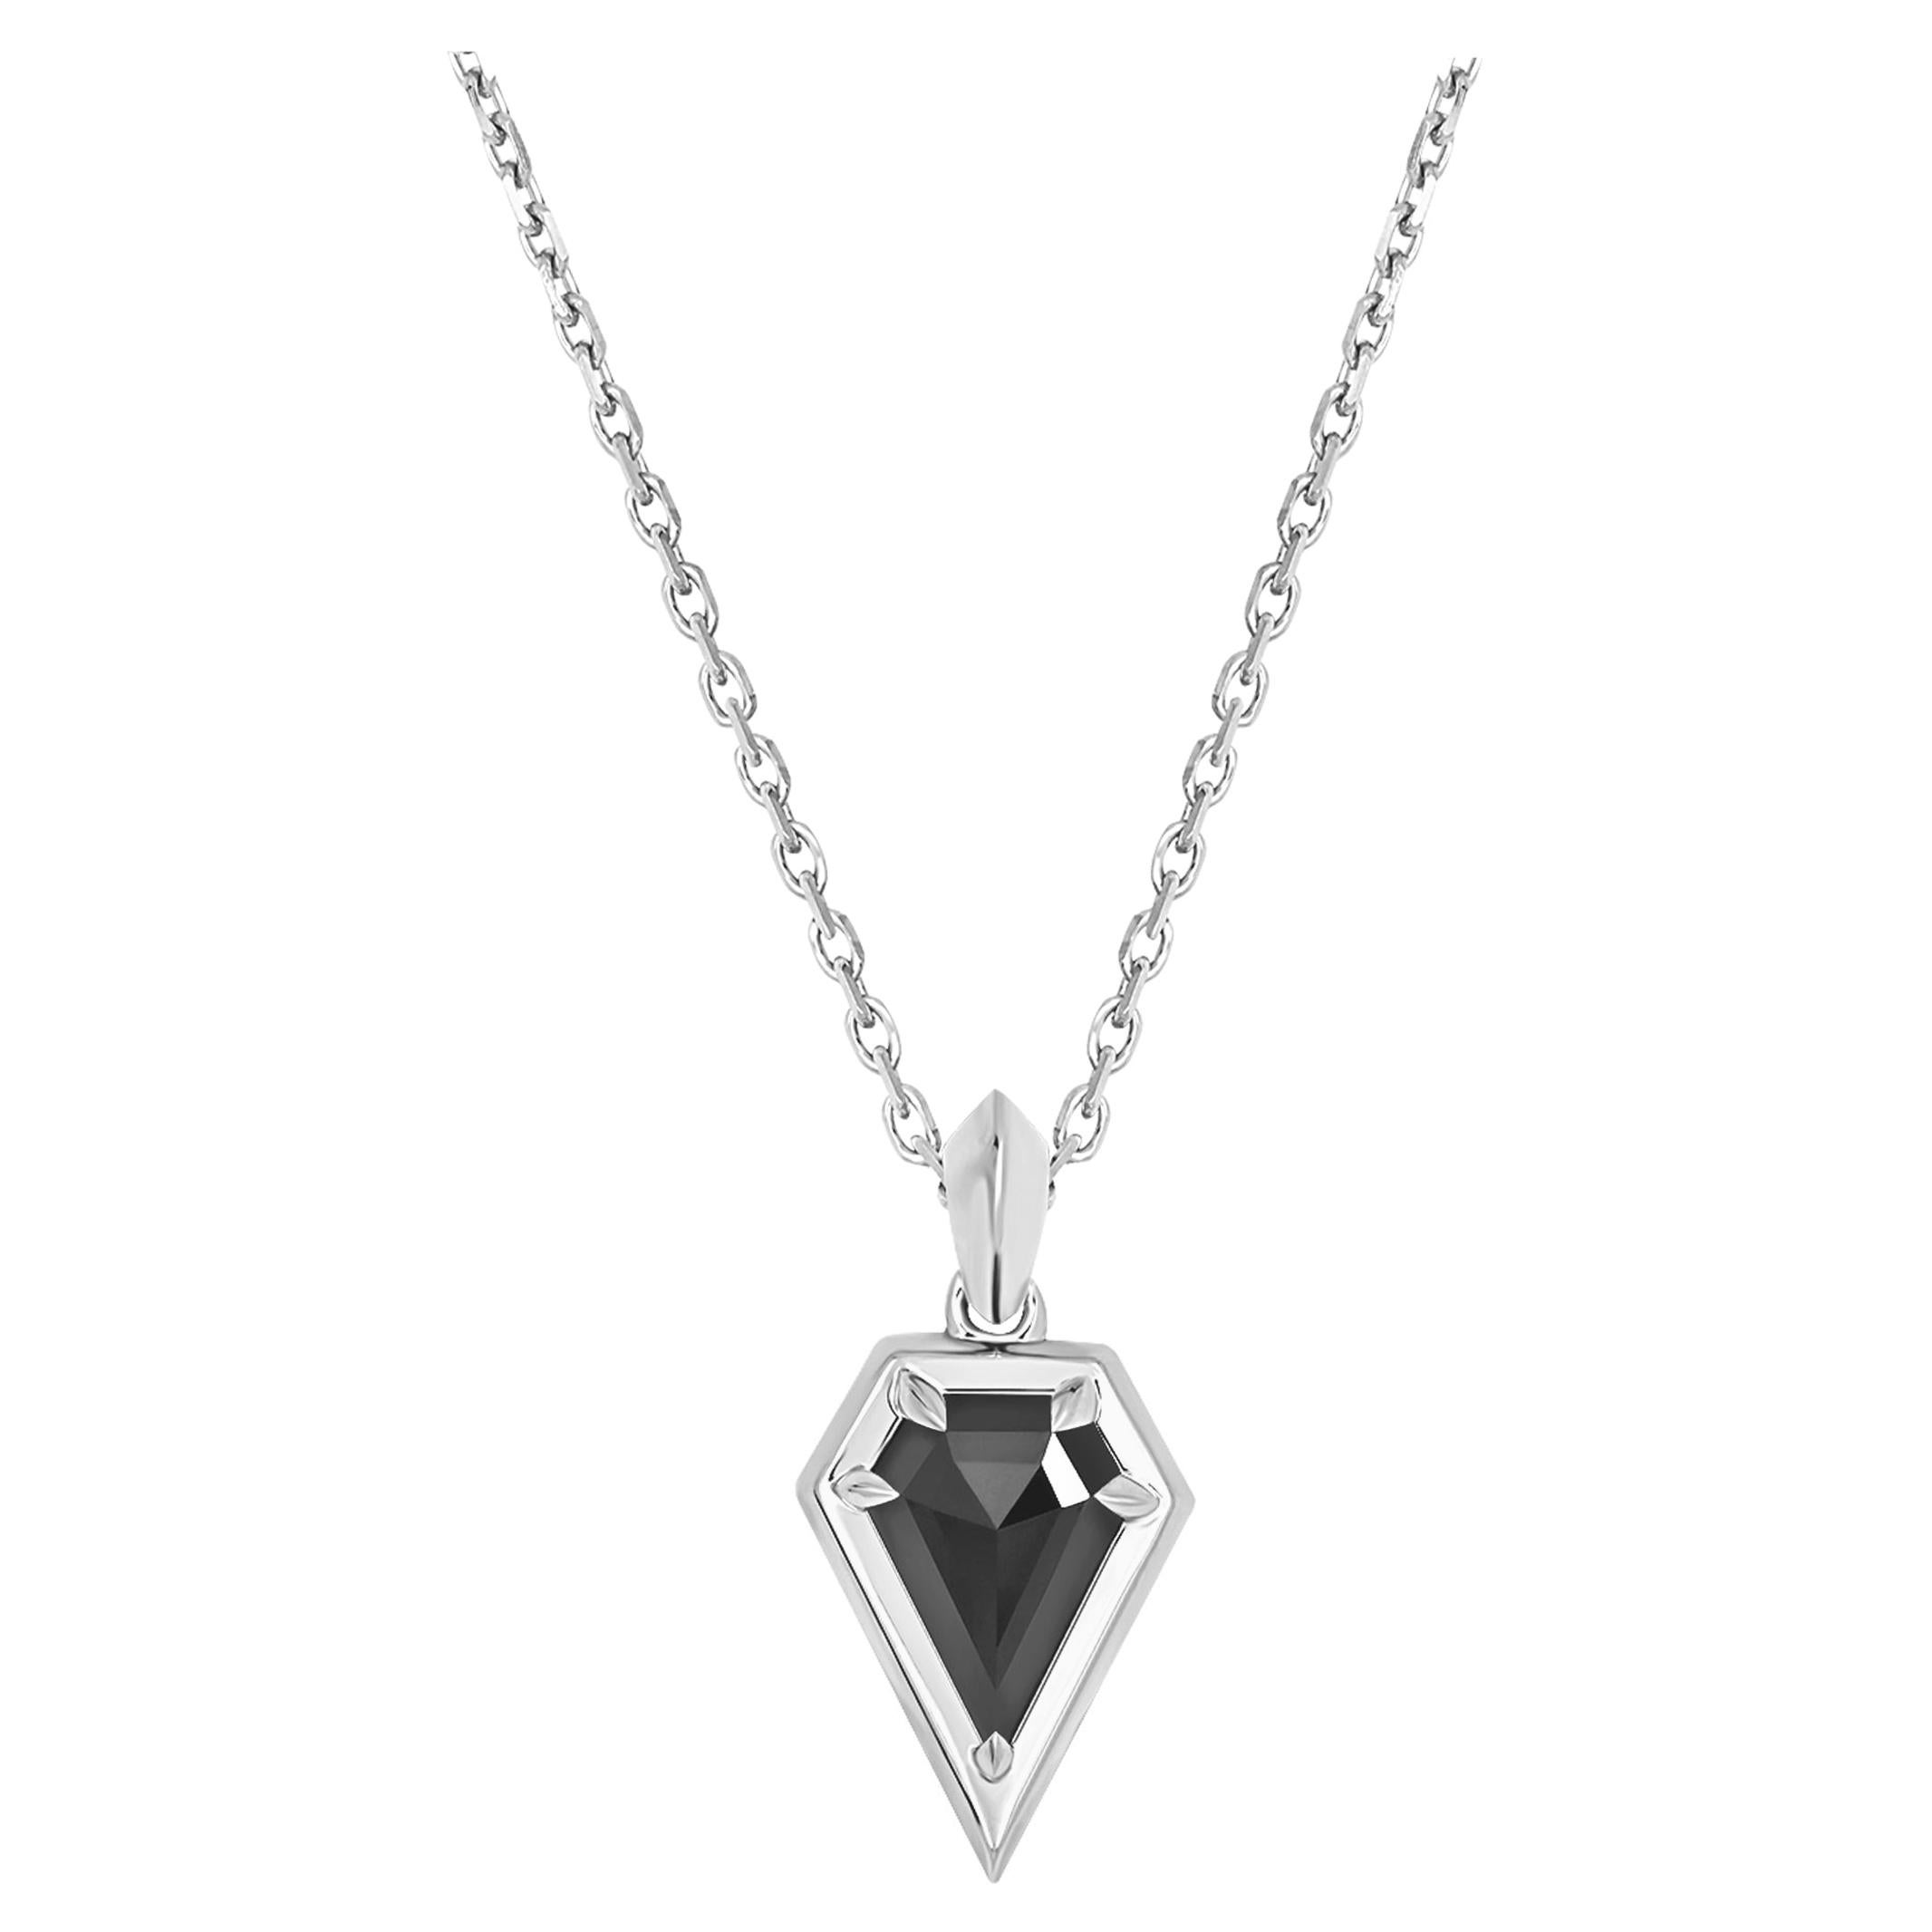 Angie Marei, collier pendentif Aphrodite en diamants noirs de 1,20 carat et blancs 18 carats